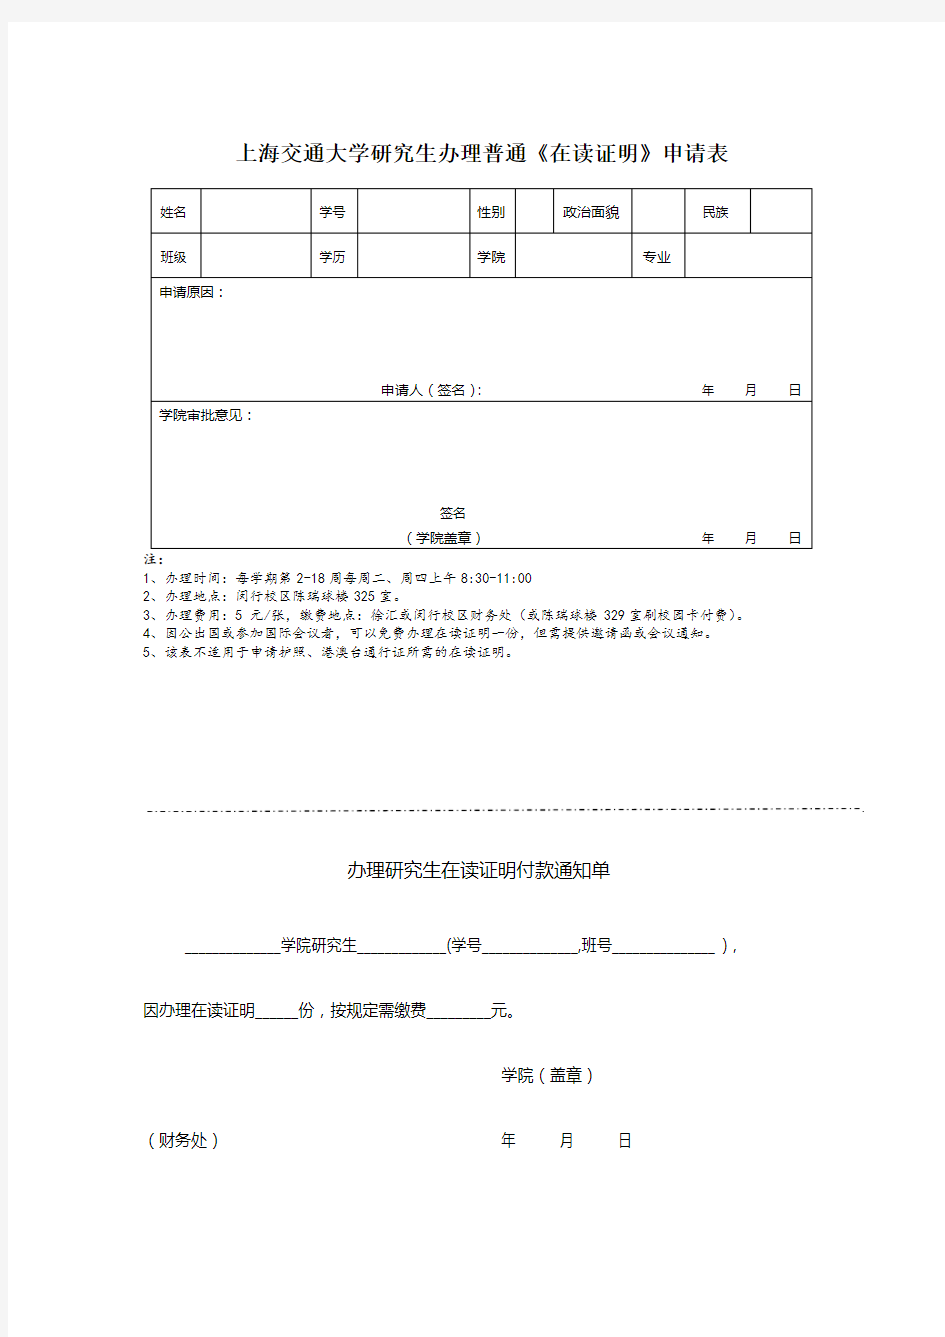 上海交通大学研究生办理普通《在读证明》申请表